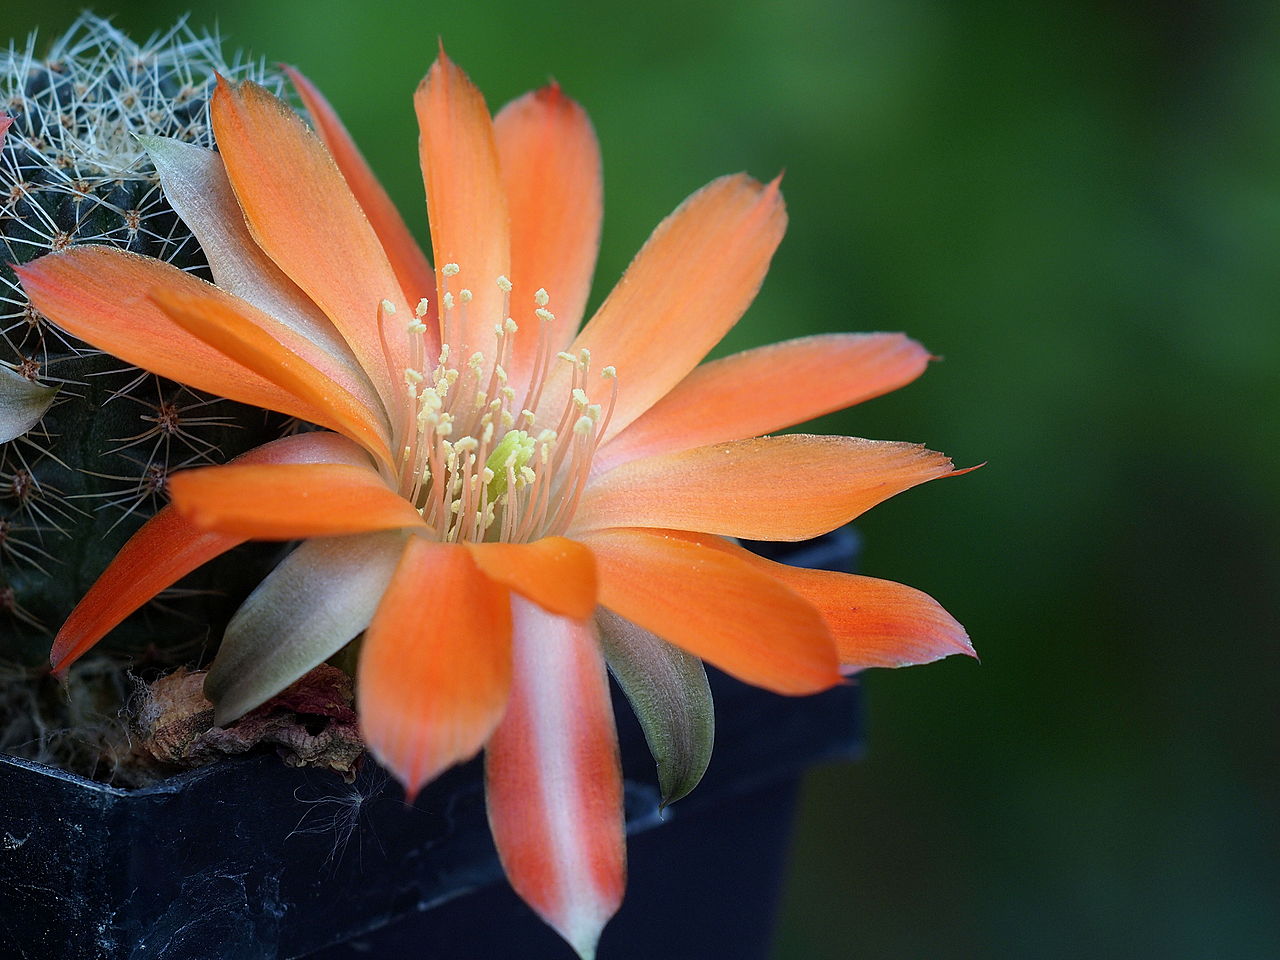 La Rebutia es un tipo de cactus que produce flores preciosas